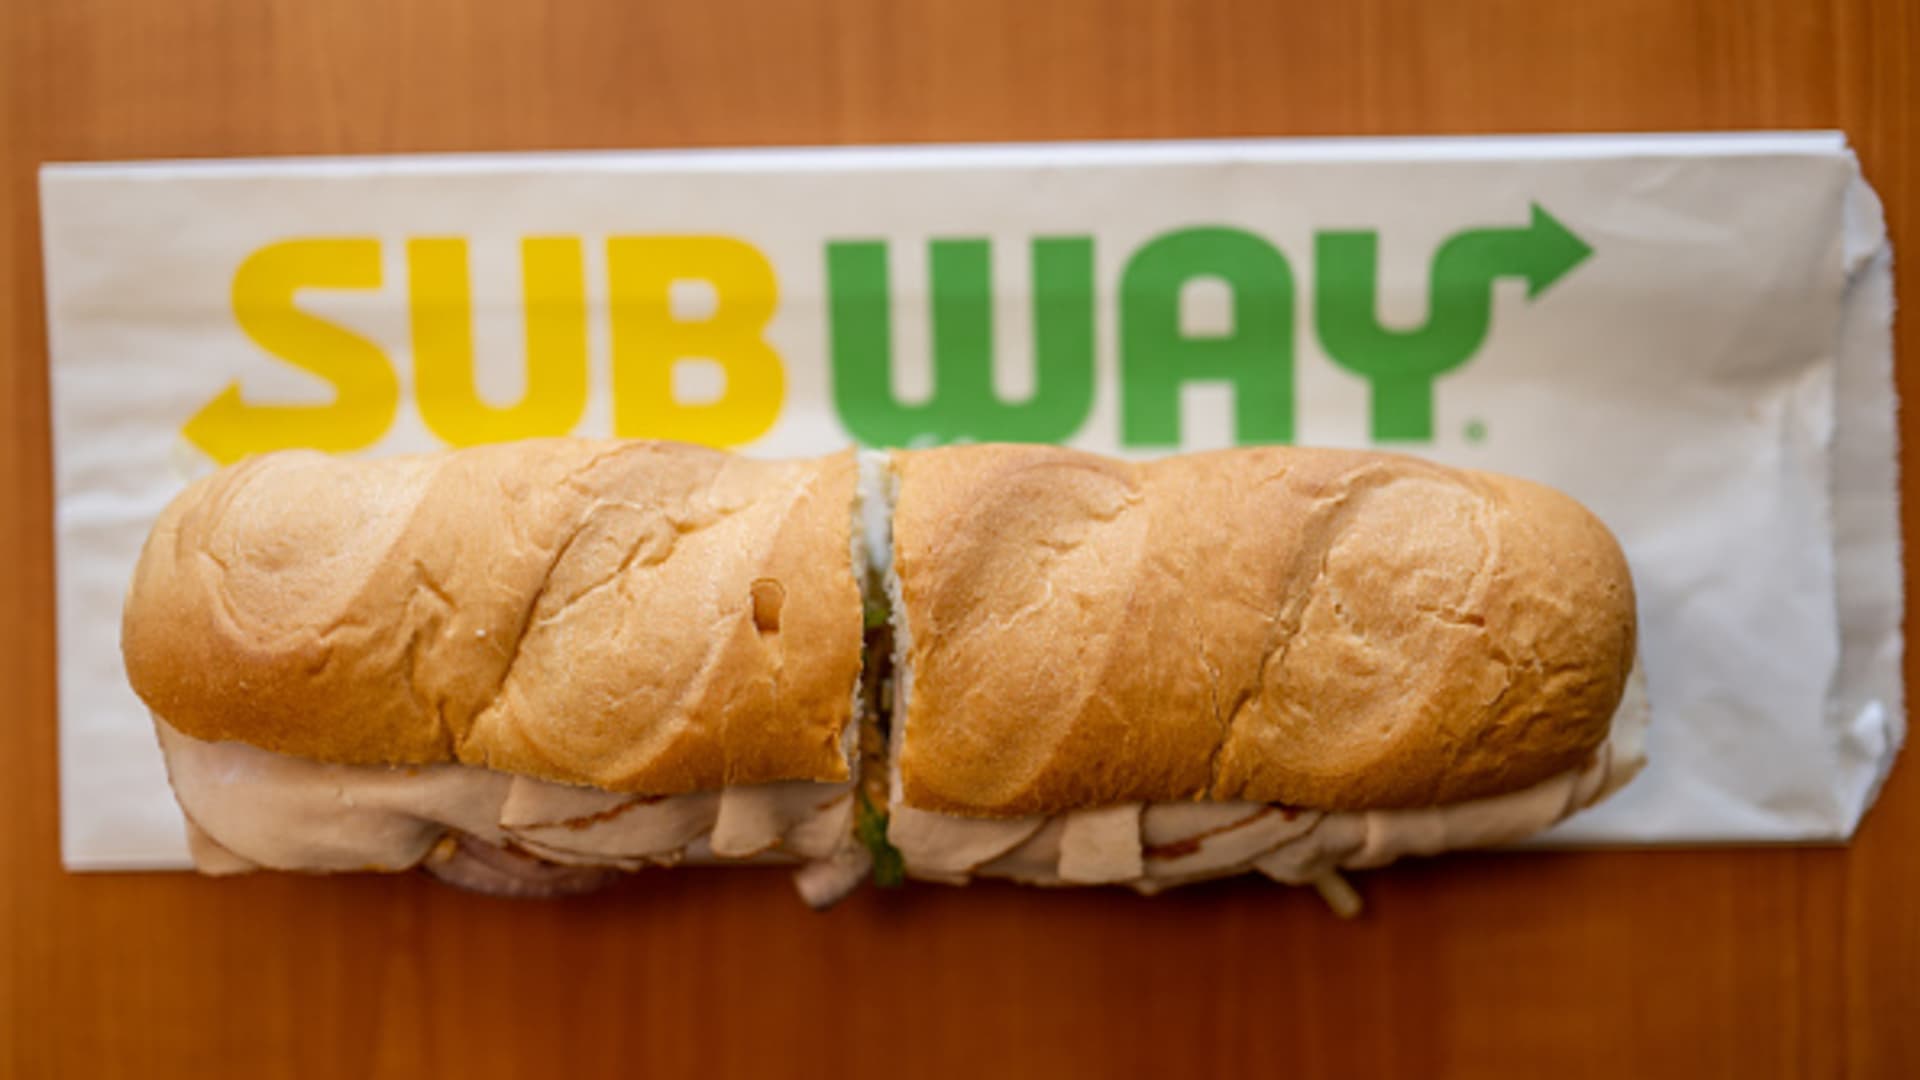 Rommelig been de wind is sterk Sandwich chain Subway explores sale